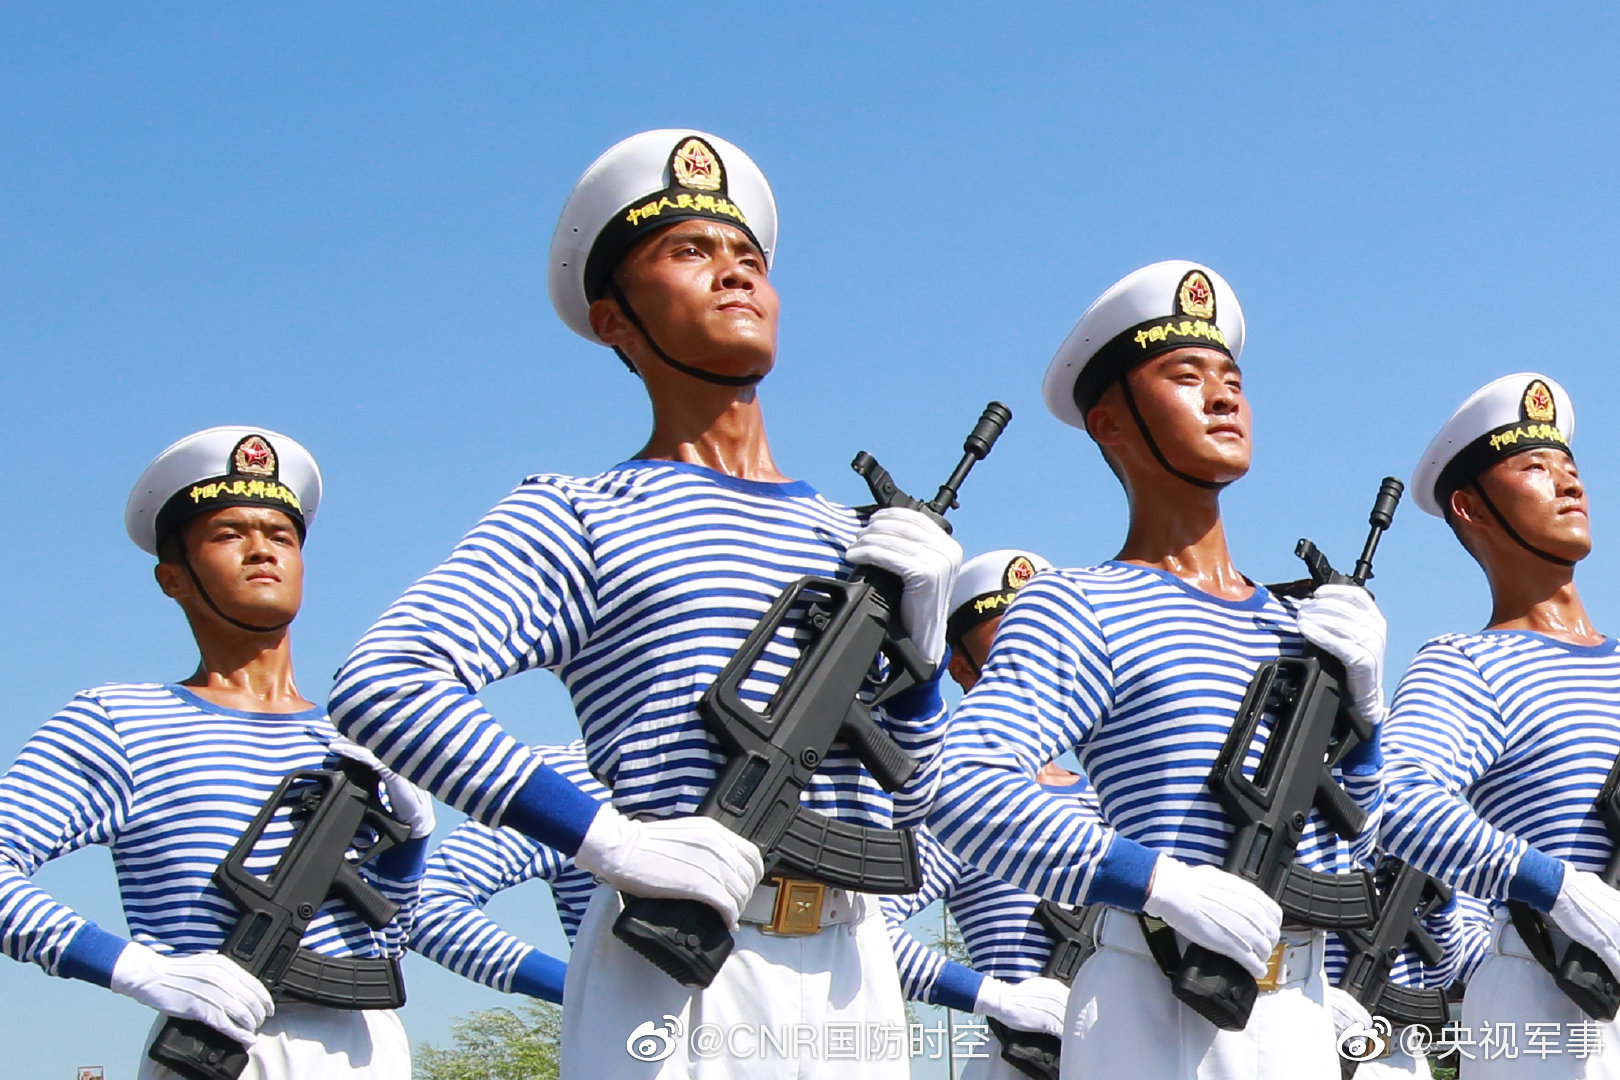 海上阅兵现场图片:这是解放军海军仪仗队列队(图)|海军|仪仗队|阅兵_新浪新闻